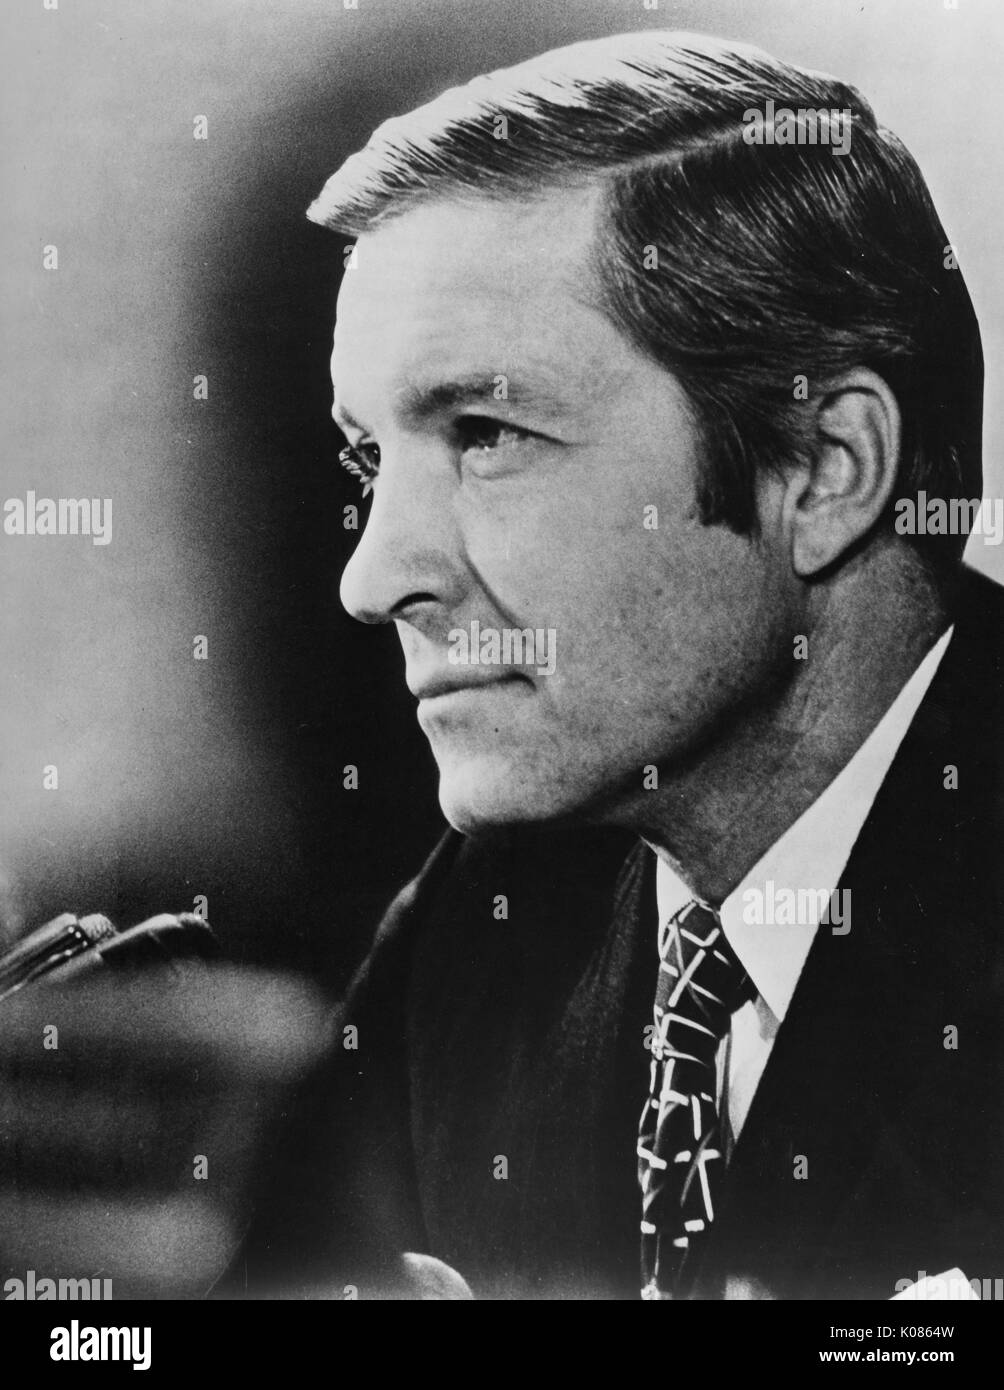 Head-shot der Politiker Charles Percy, trug einen dunklen Anzug und eine gemusterte Krawatte, lehnte sich in ein Mikrofon, mit Dicht gekämmte Haare, mit einem ernsten Gesichtsausdruck, 1965. Stockfoto